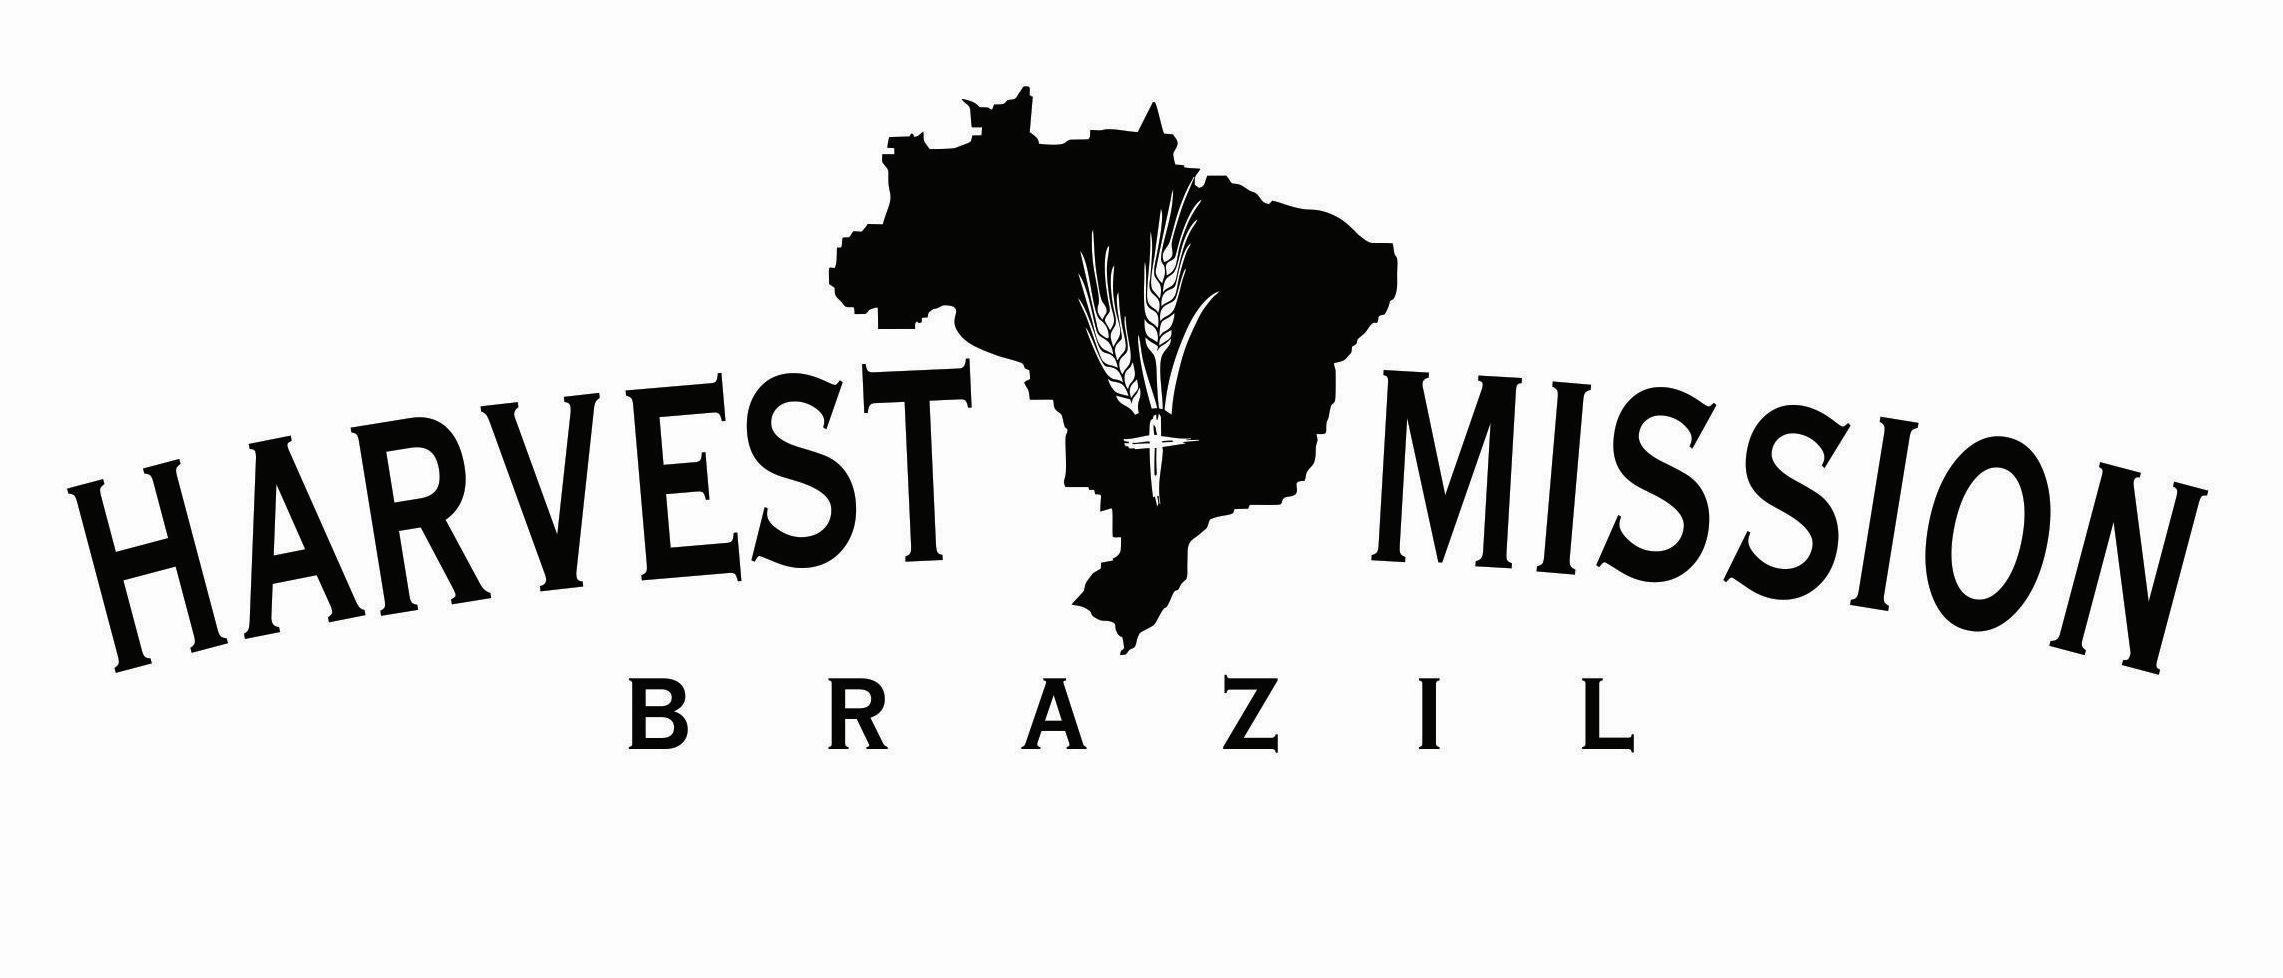 Harvest Mission Brazil